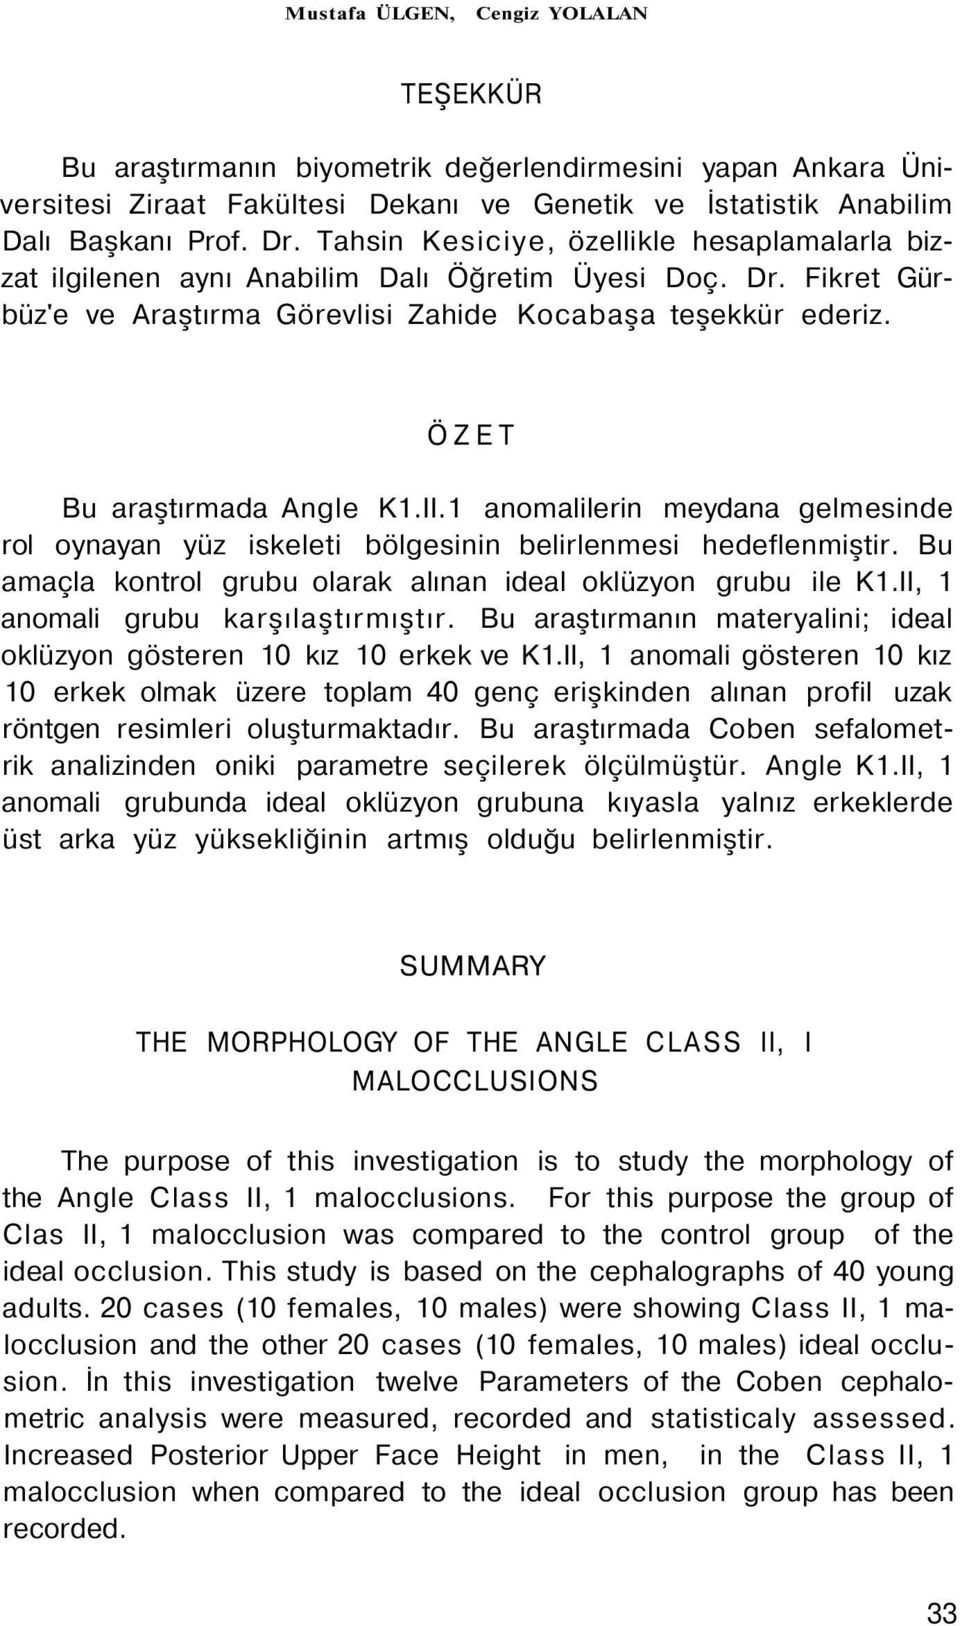 ÖZET Bu araştırmada Angle K1.II.1 anomalilerin meydana gelmesinde rol oynayan yüz iskeleti bölgesinin belirlenmesi hedeflenmiştir. Bu amaçla kontrol grubu olarak alınan ideal oklüzyon grubu ile K1.